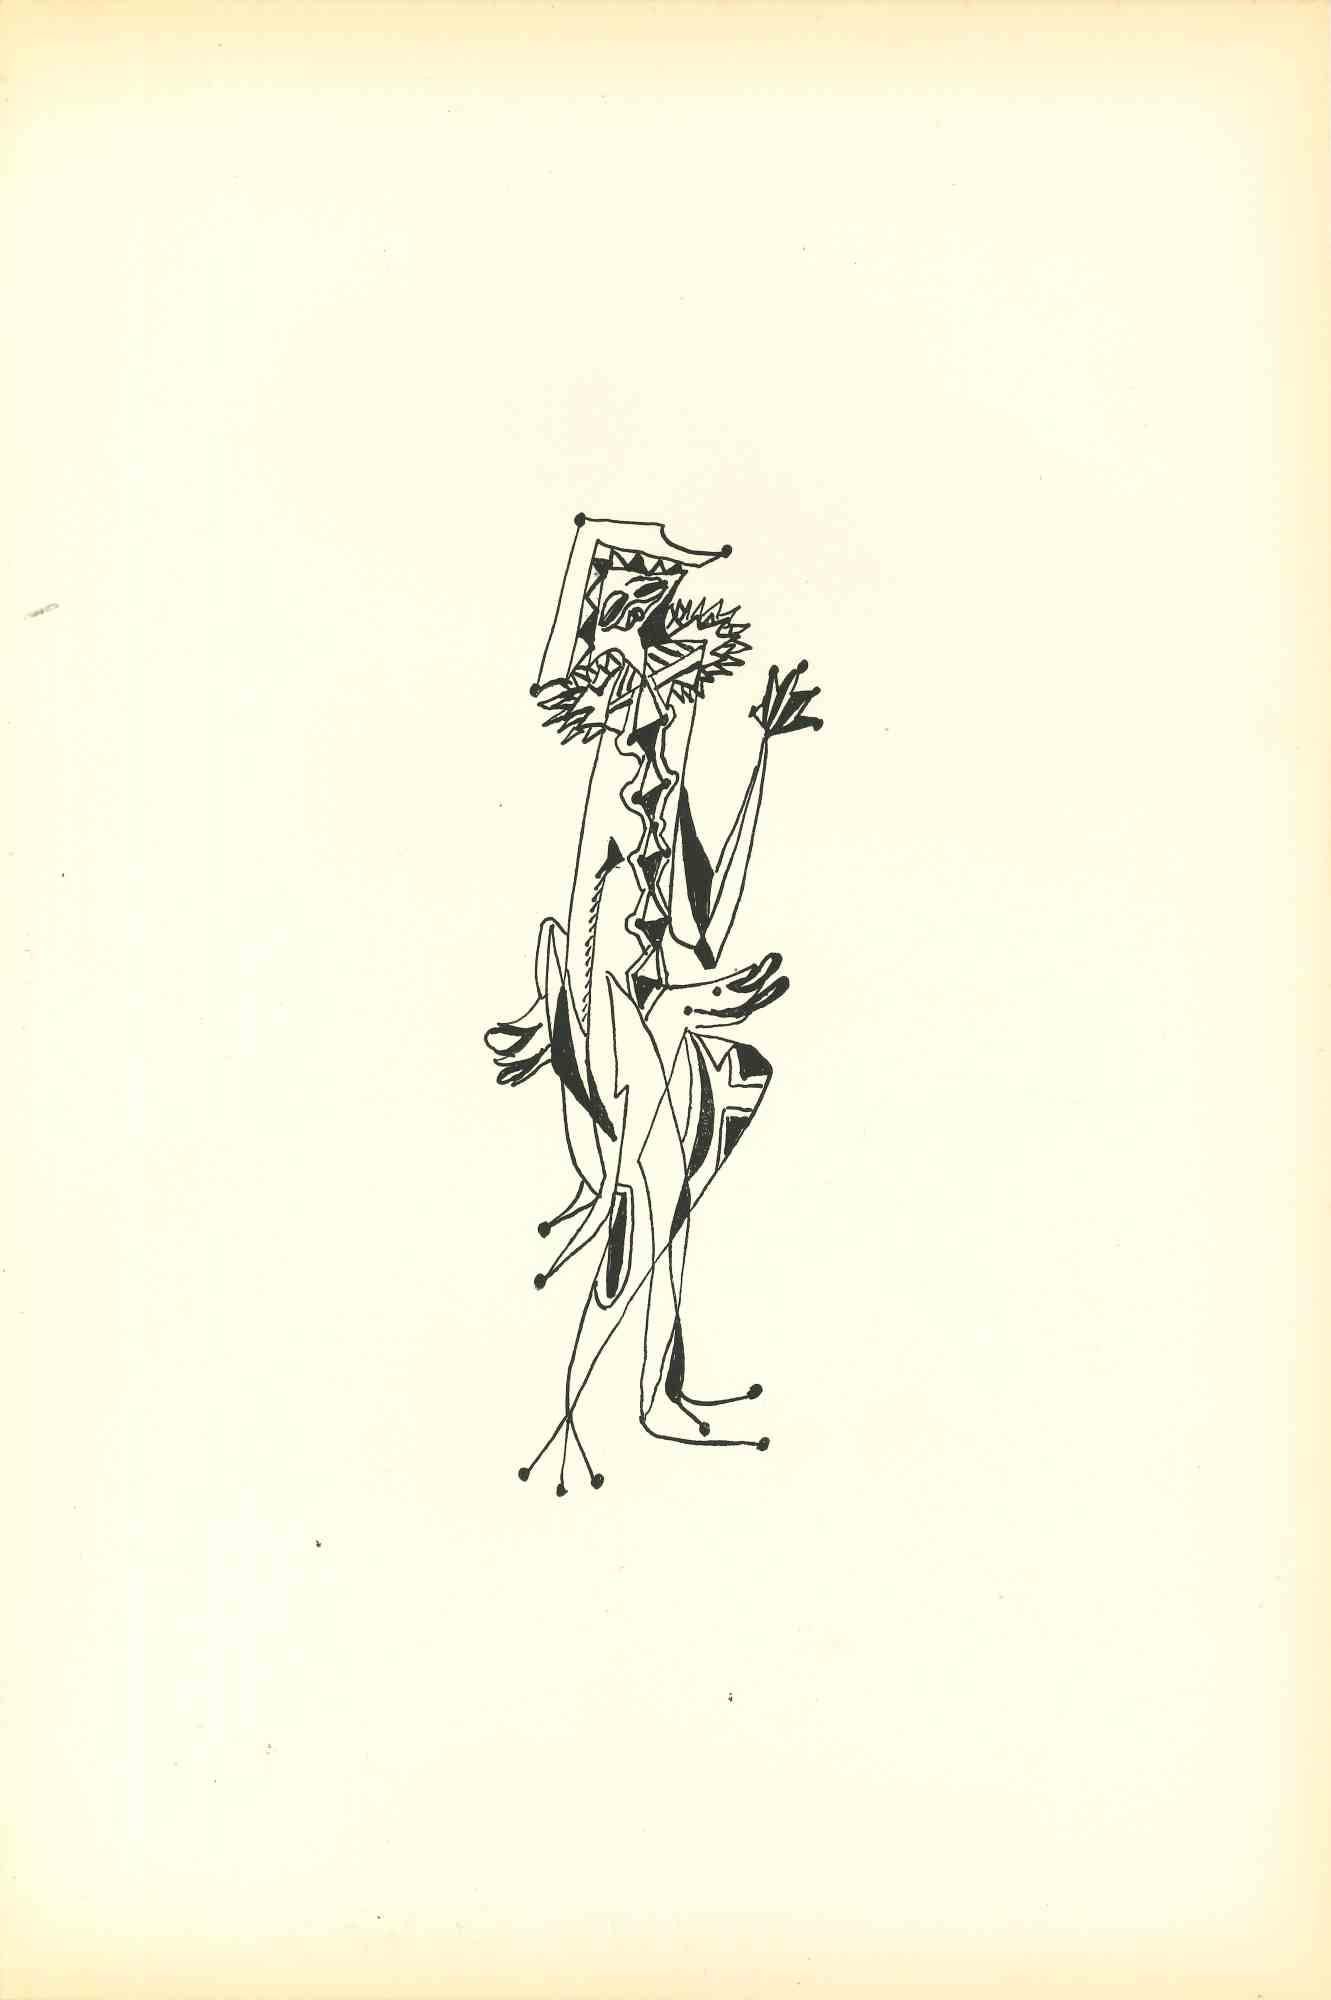 Unknown Figurative Print - Composition Of Diodora - Original Lithograph by Bruno Capacci - 1950